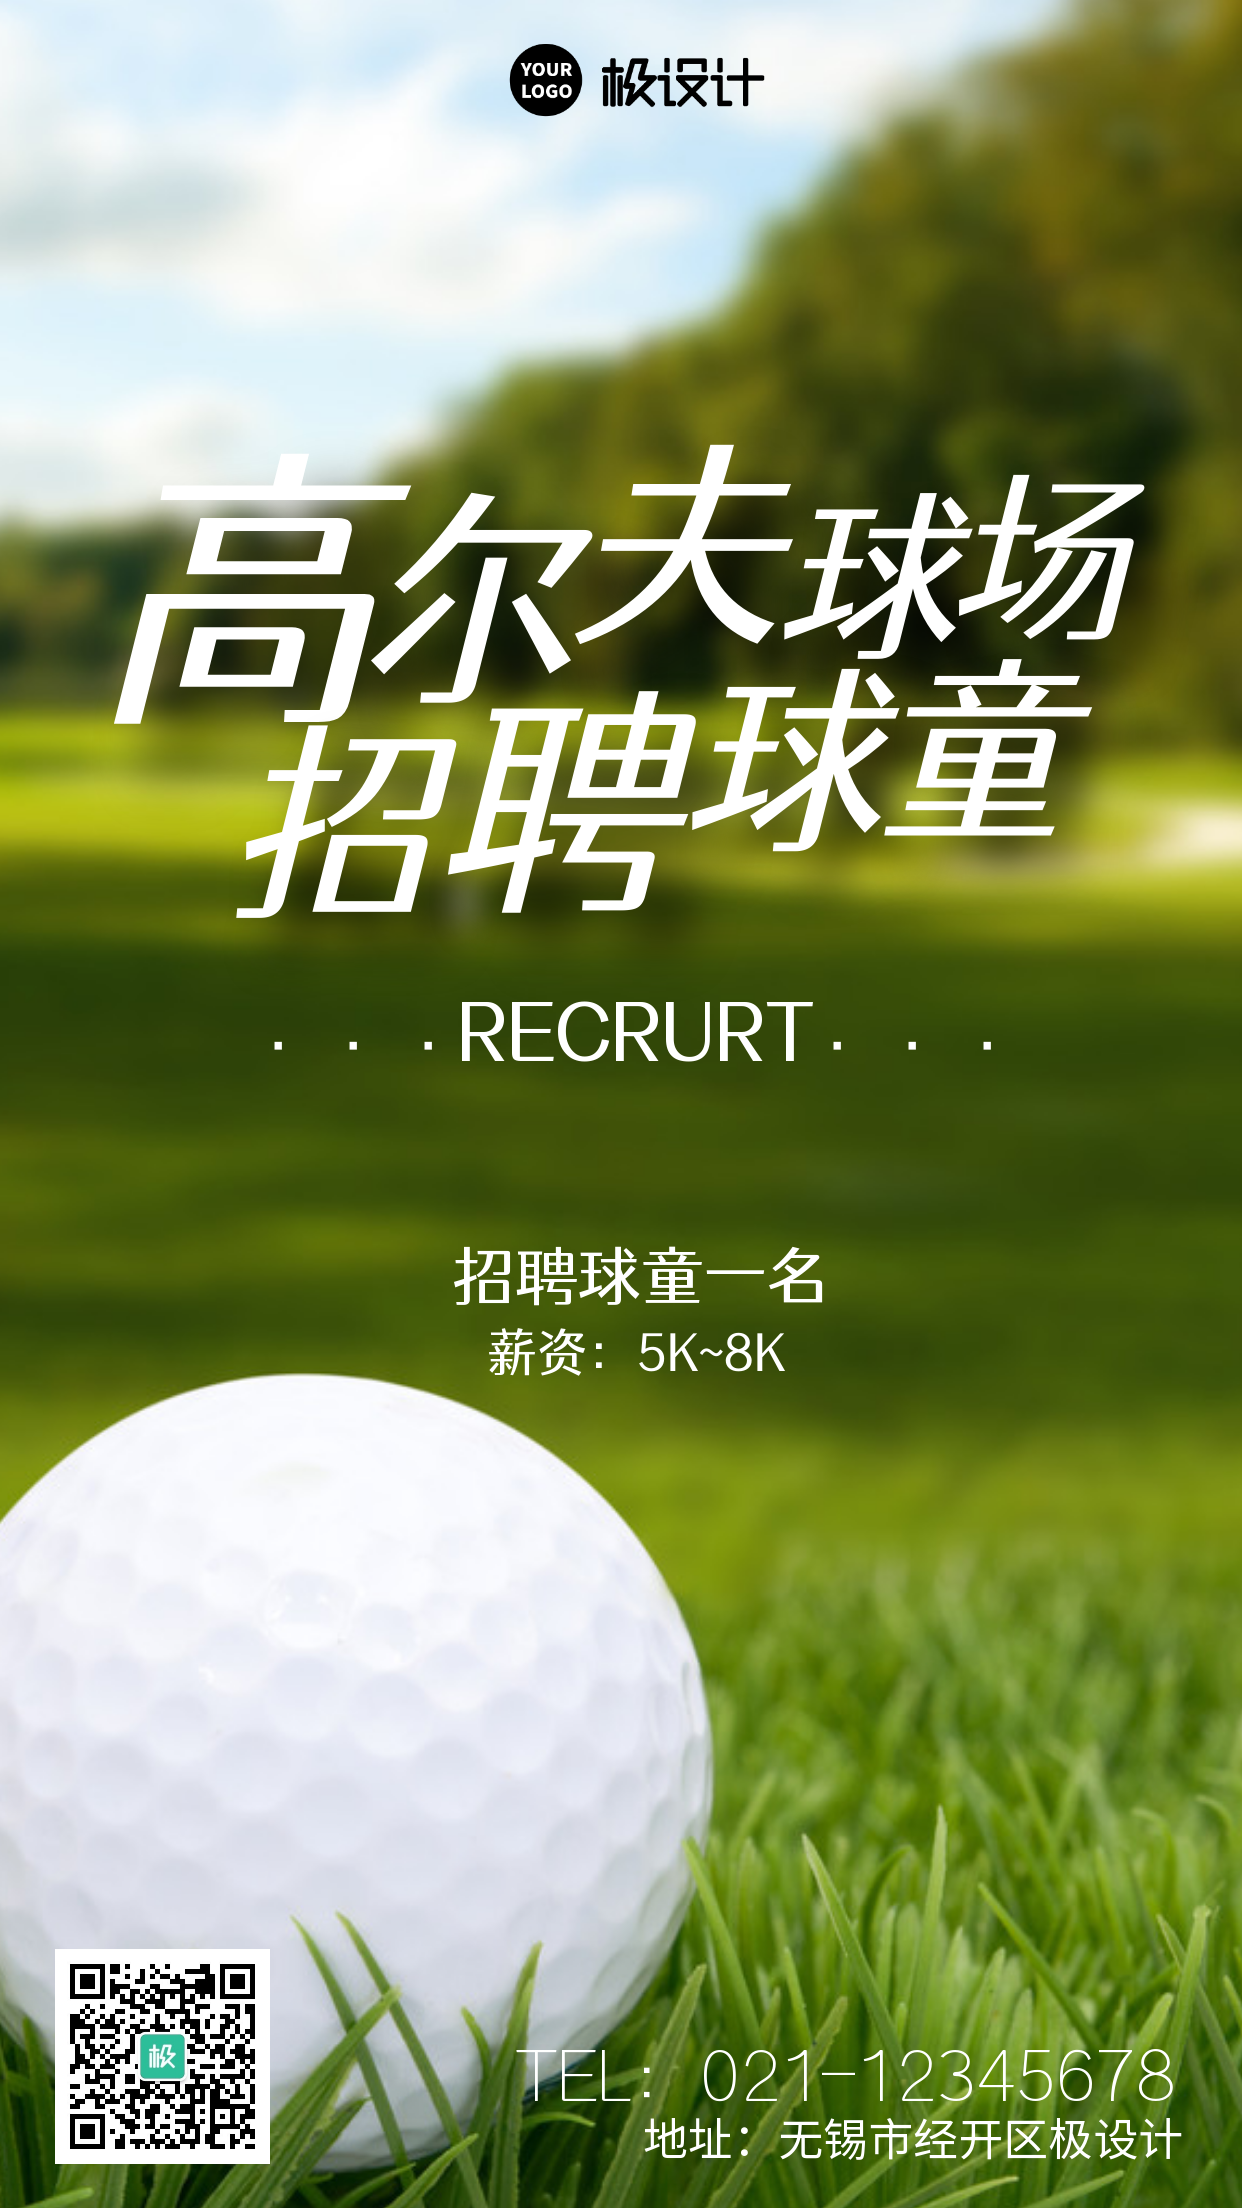 高尔夫球场招聘简约大气摄影图手机海报